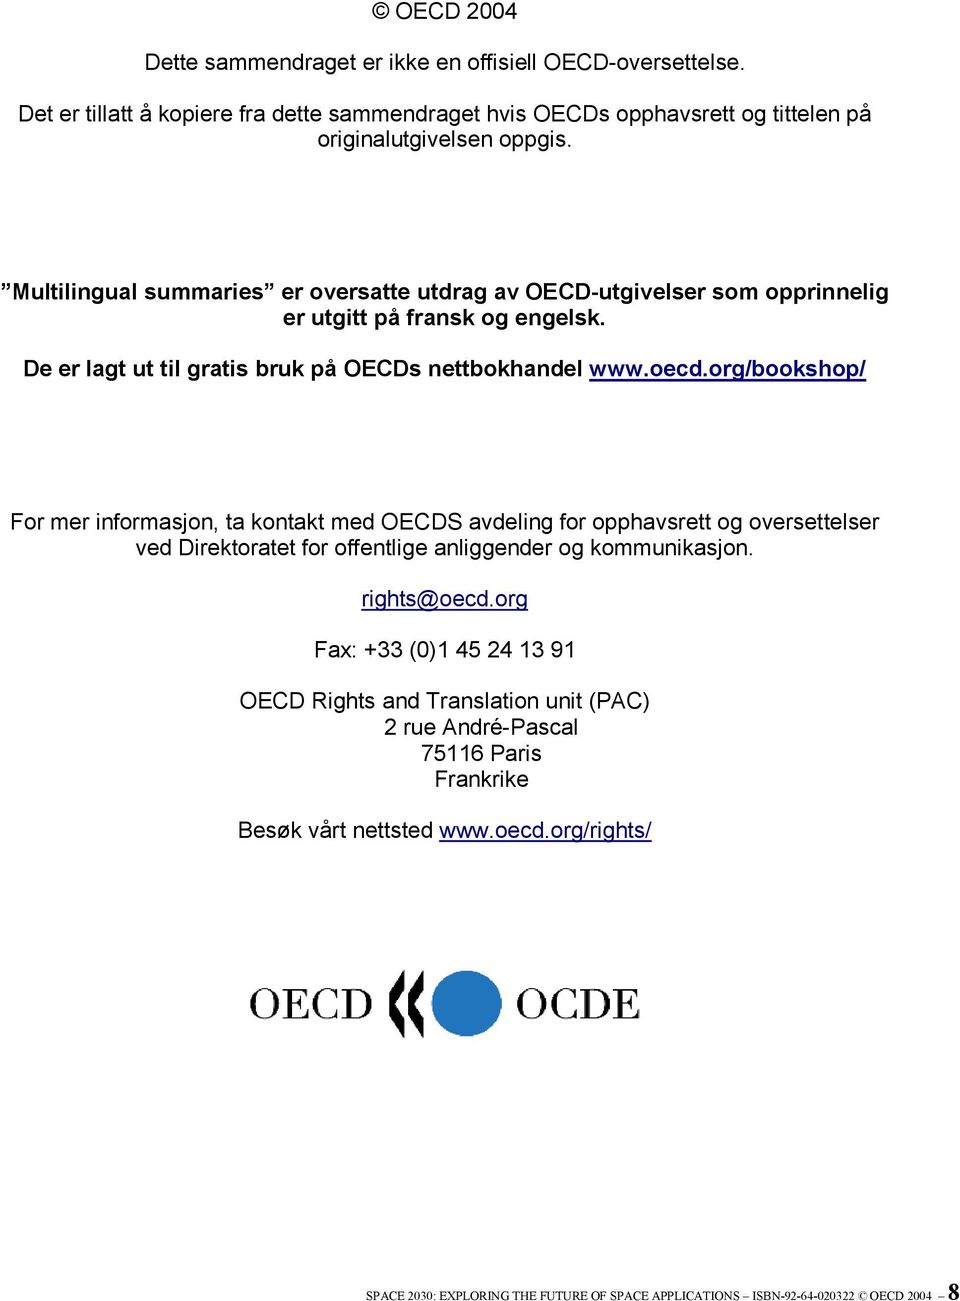 org/bookshop/ For mer informasjon, ta kontakt med OECDS avdeling for opphavsrett og oversettelser ved Direktoratet for offentlige anliggender og kommunikasjon. rights@oecd.